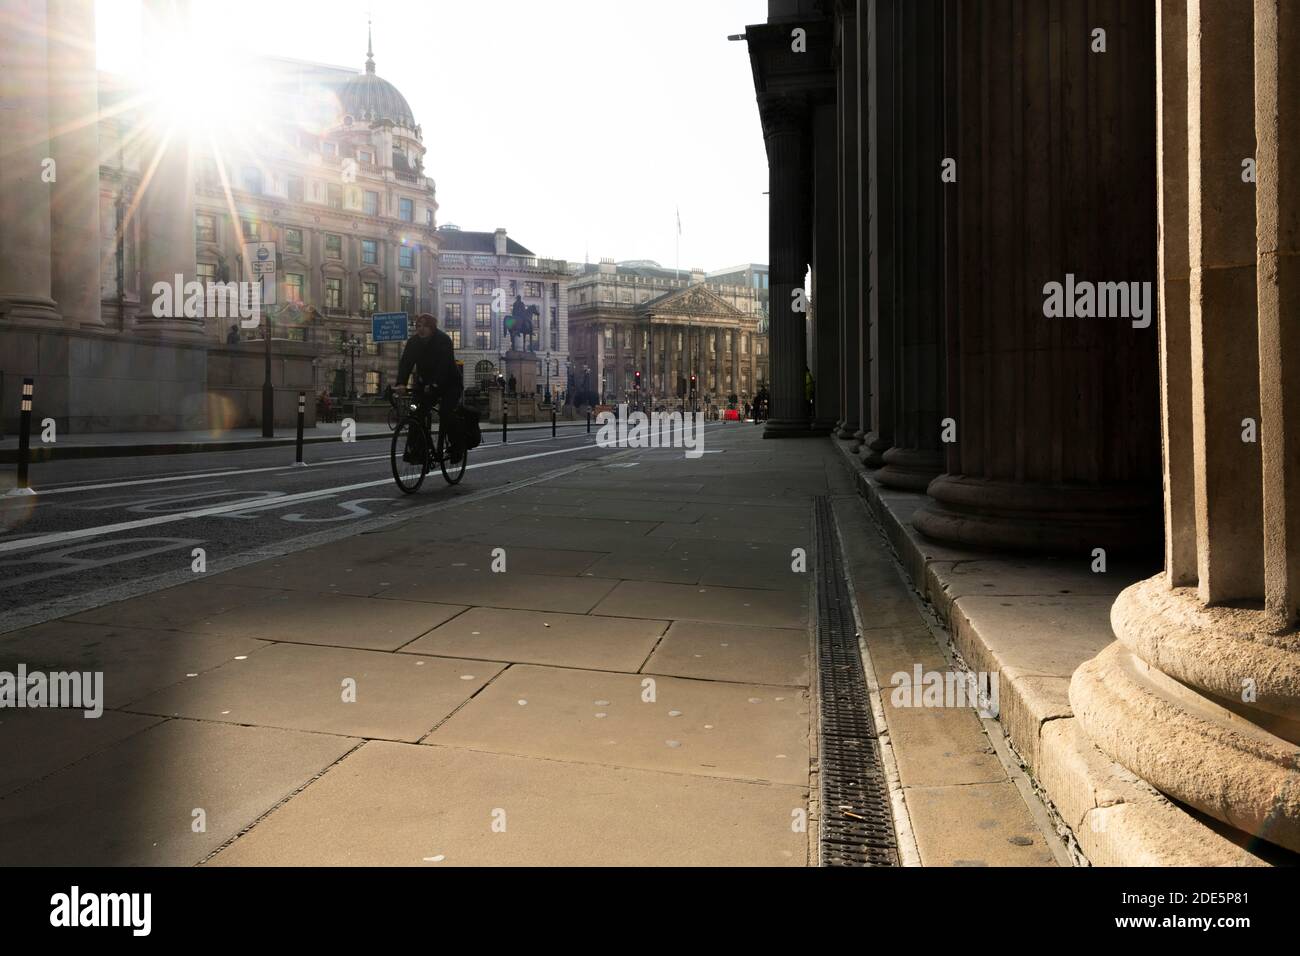 Ruhige Straßen von London in England während der Coronavirus Covid-19 Sperre bei der Bank of England und Royal Exchange in der Stadt, ohne Verkehr Auswirkungen der globalen Pandemie in Großbritannien, Europa Stockfoto